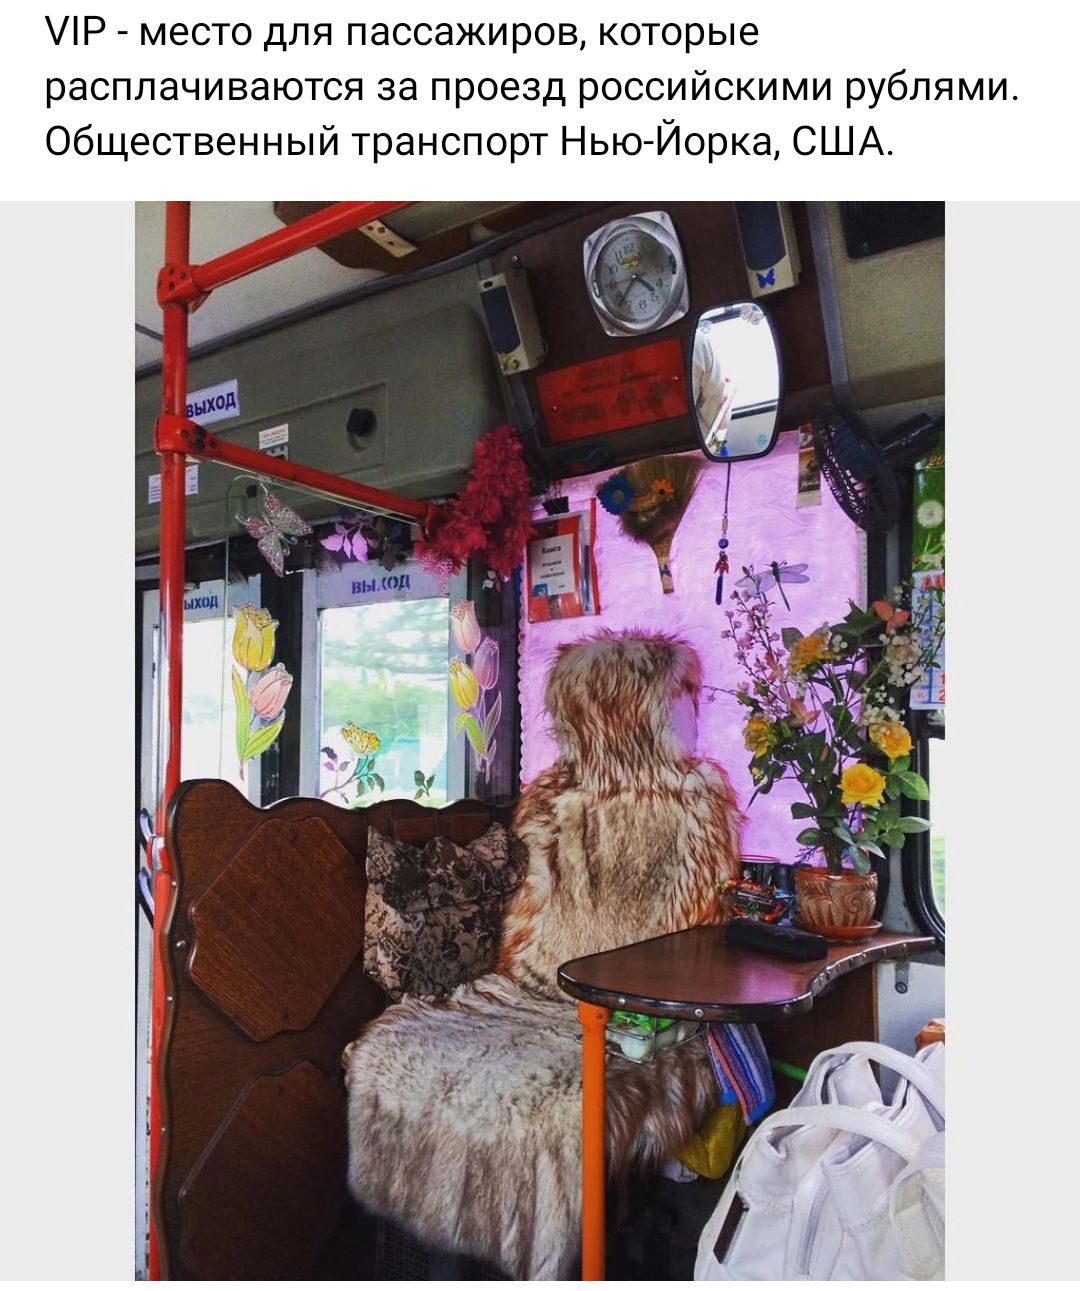 ЛР _ место для пассажиров которые расплачиваются за проезд российскими рублями Общественный транспорт НьЙорка США